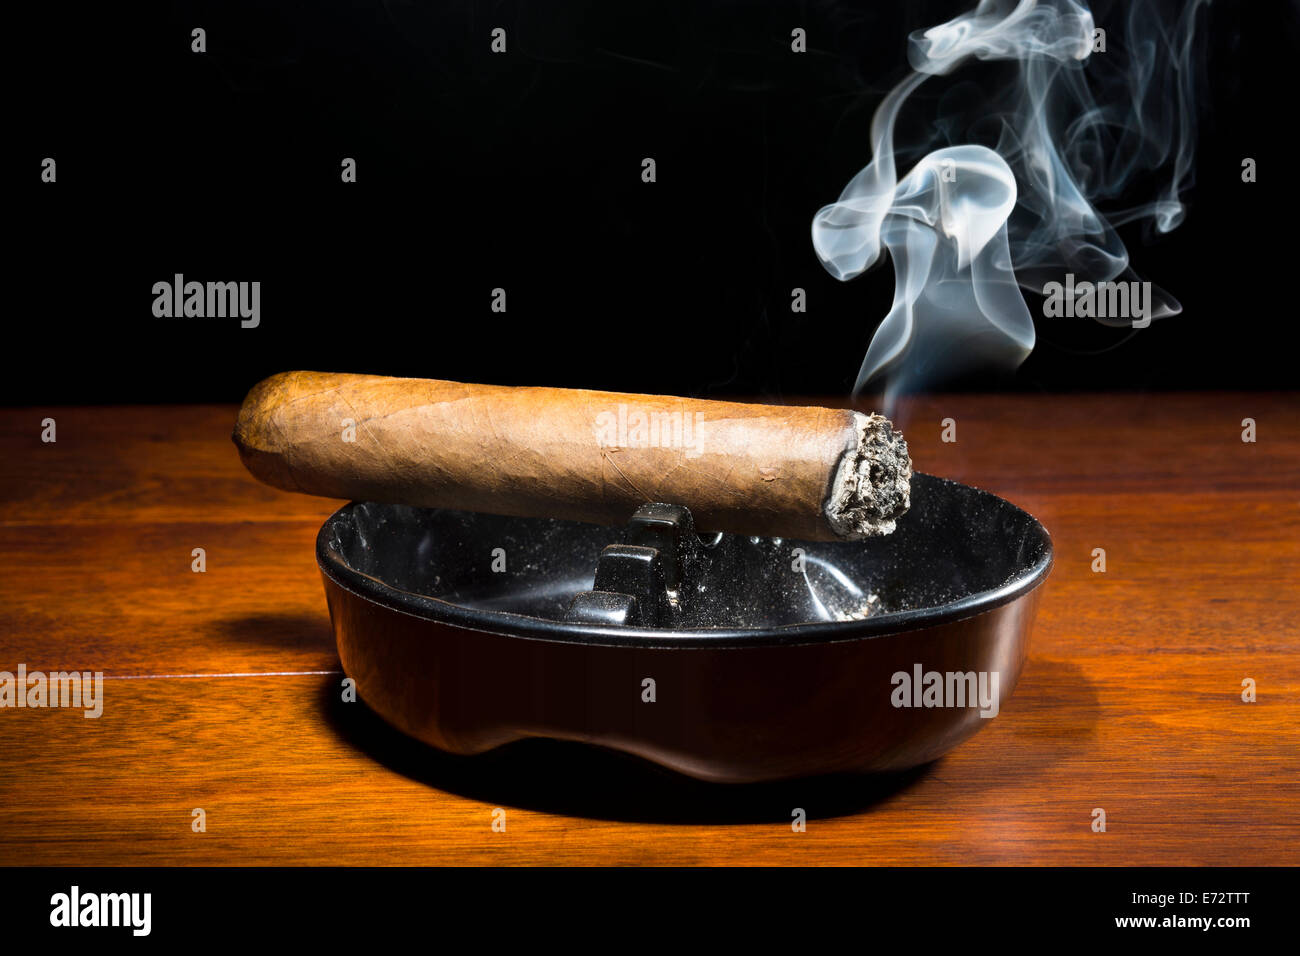 Eine brennende Zigarre in einem klassischen schwarzen Aschenbecher Streaming-Rauchen in einem dunklen, stimmungsvolle Ambiente. Stockfoto